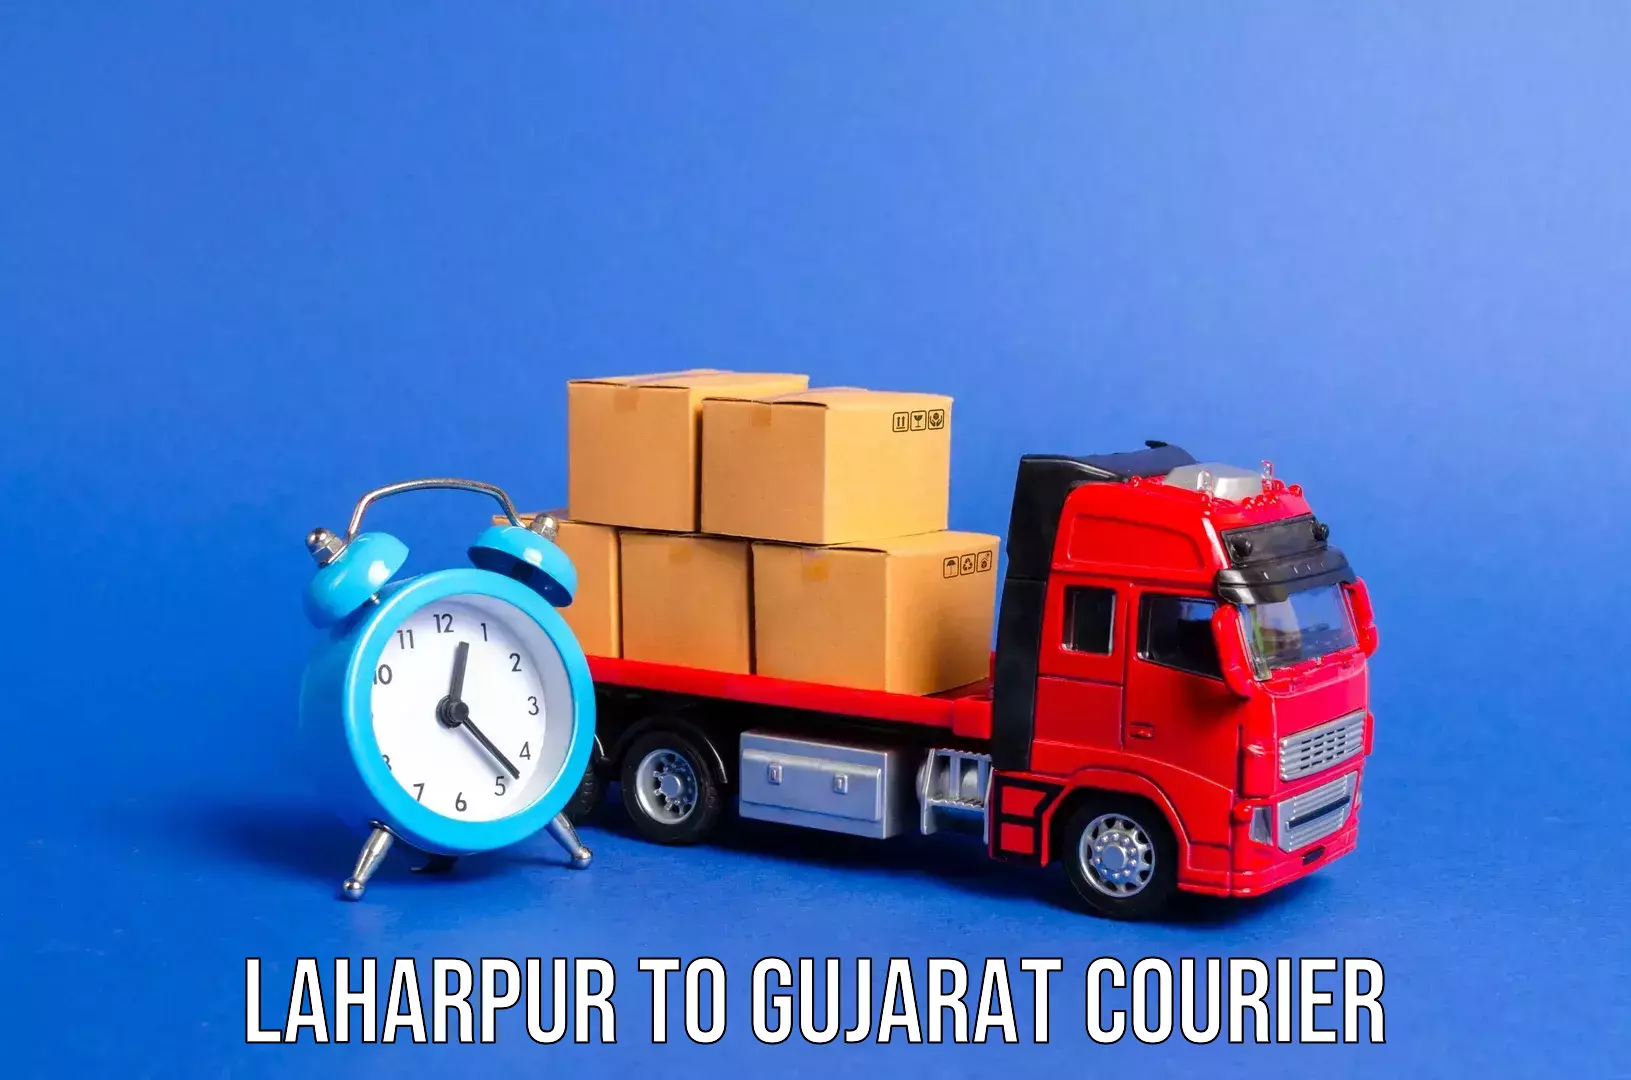 Luggage shipment processing Laharpur to Balasinor